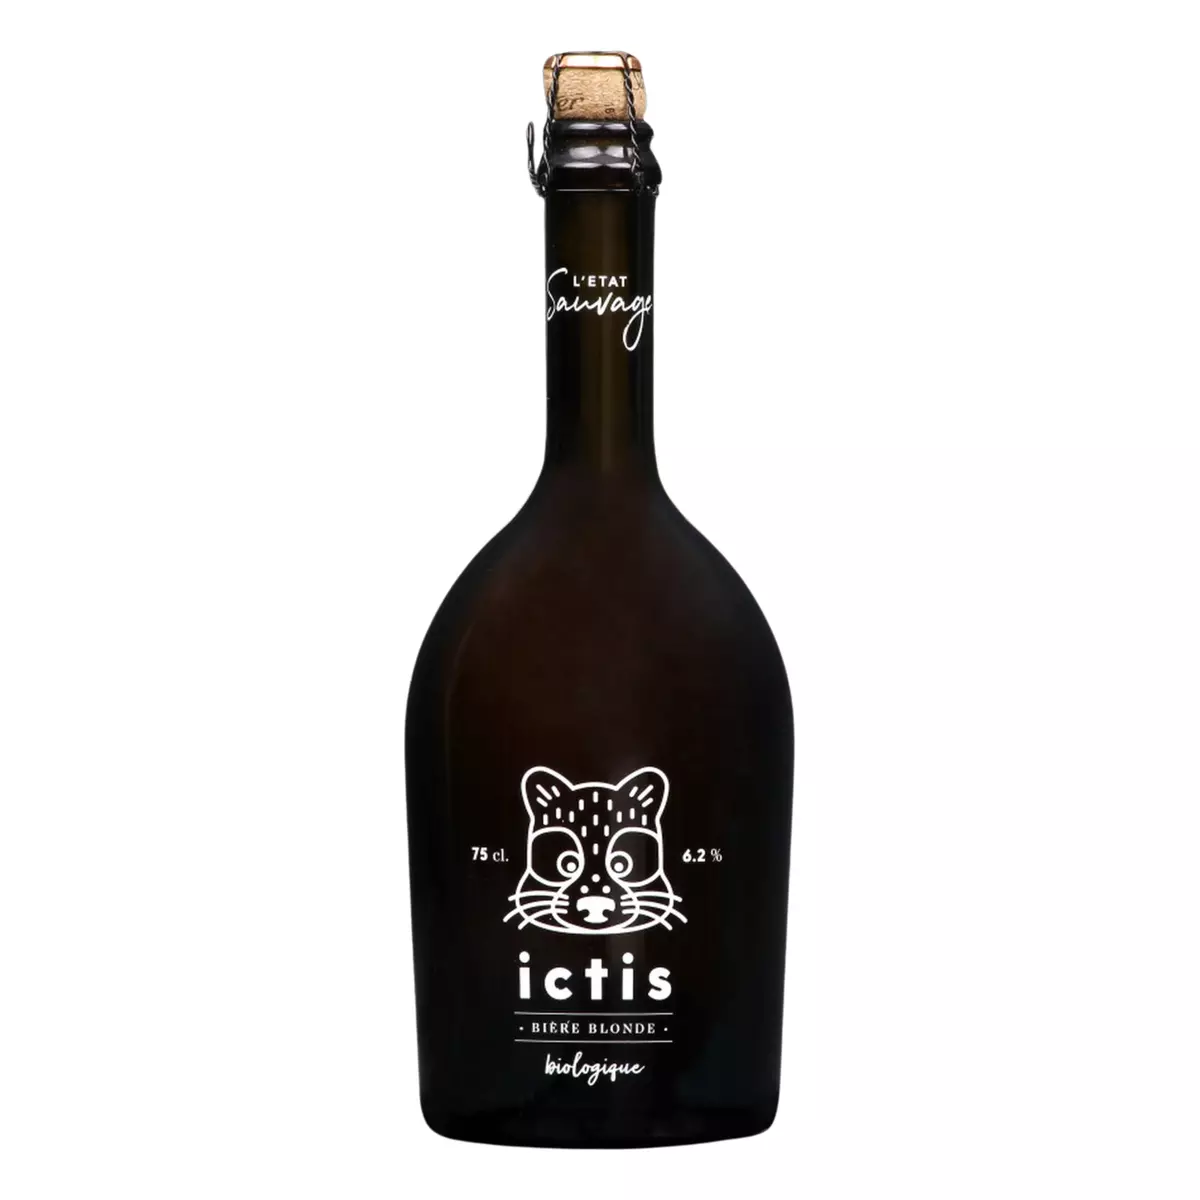 L'ETAT SAUVAGE Bière blonde bio ictis 6.2% bouteille 75cl